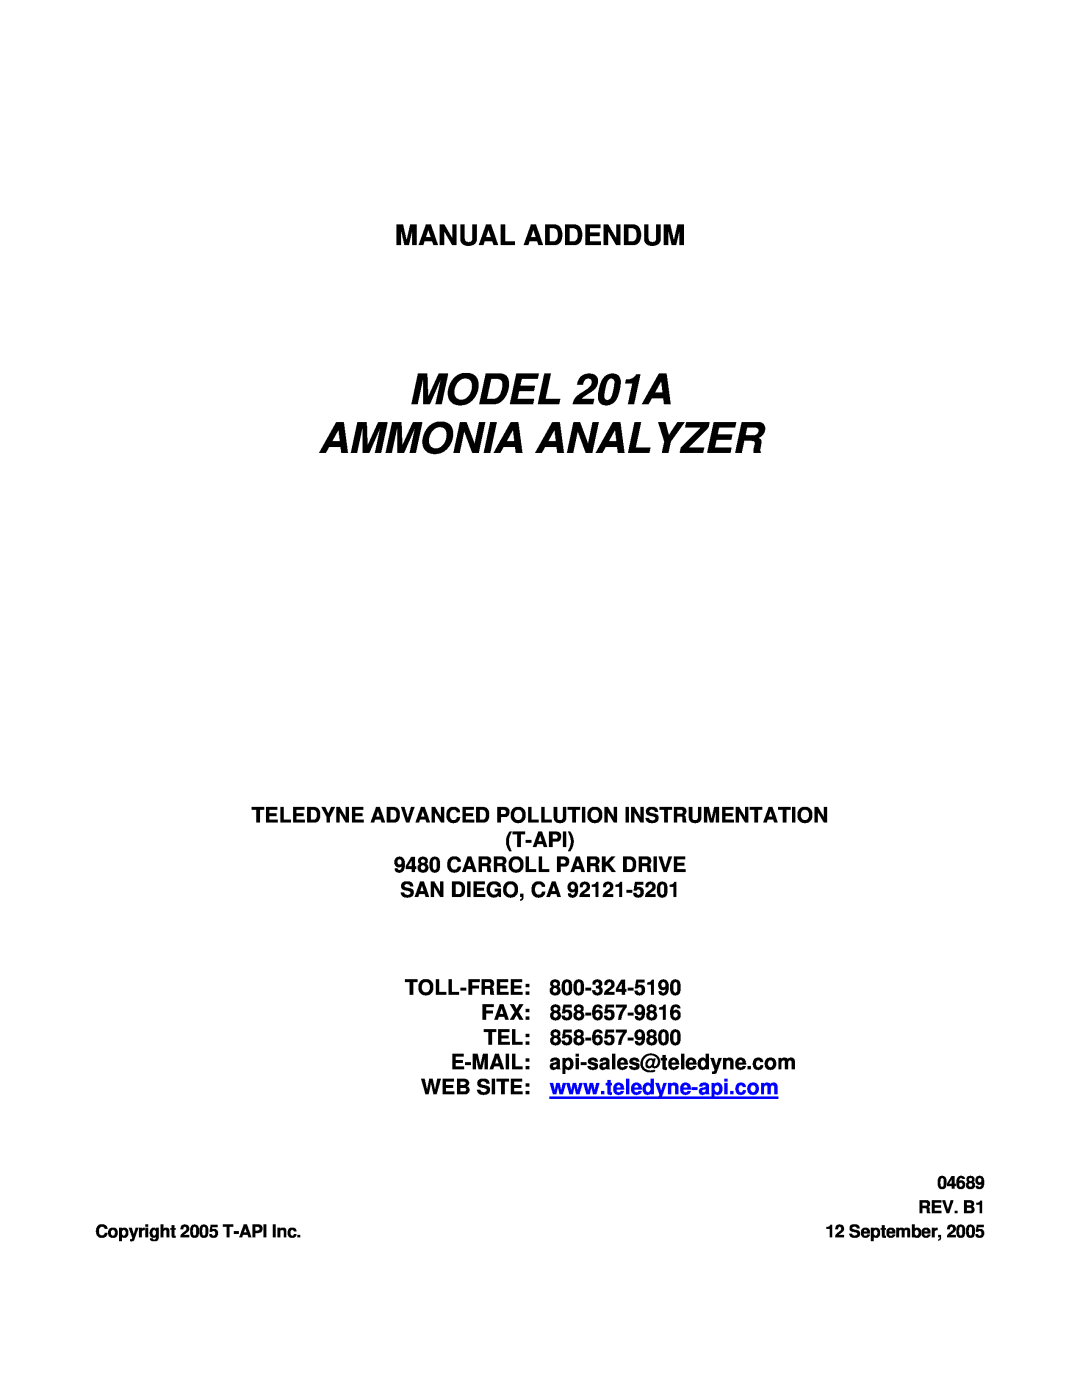 Teledyne manual Manual Addendum, Teledyne Advanced Pollution Instrumentation T-Api, MODEL 201A AMMONIA ANALYZER, 04689 